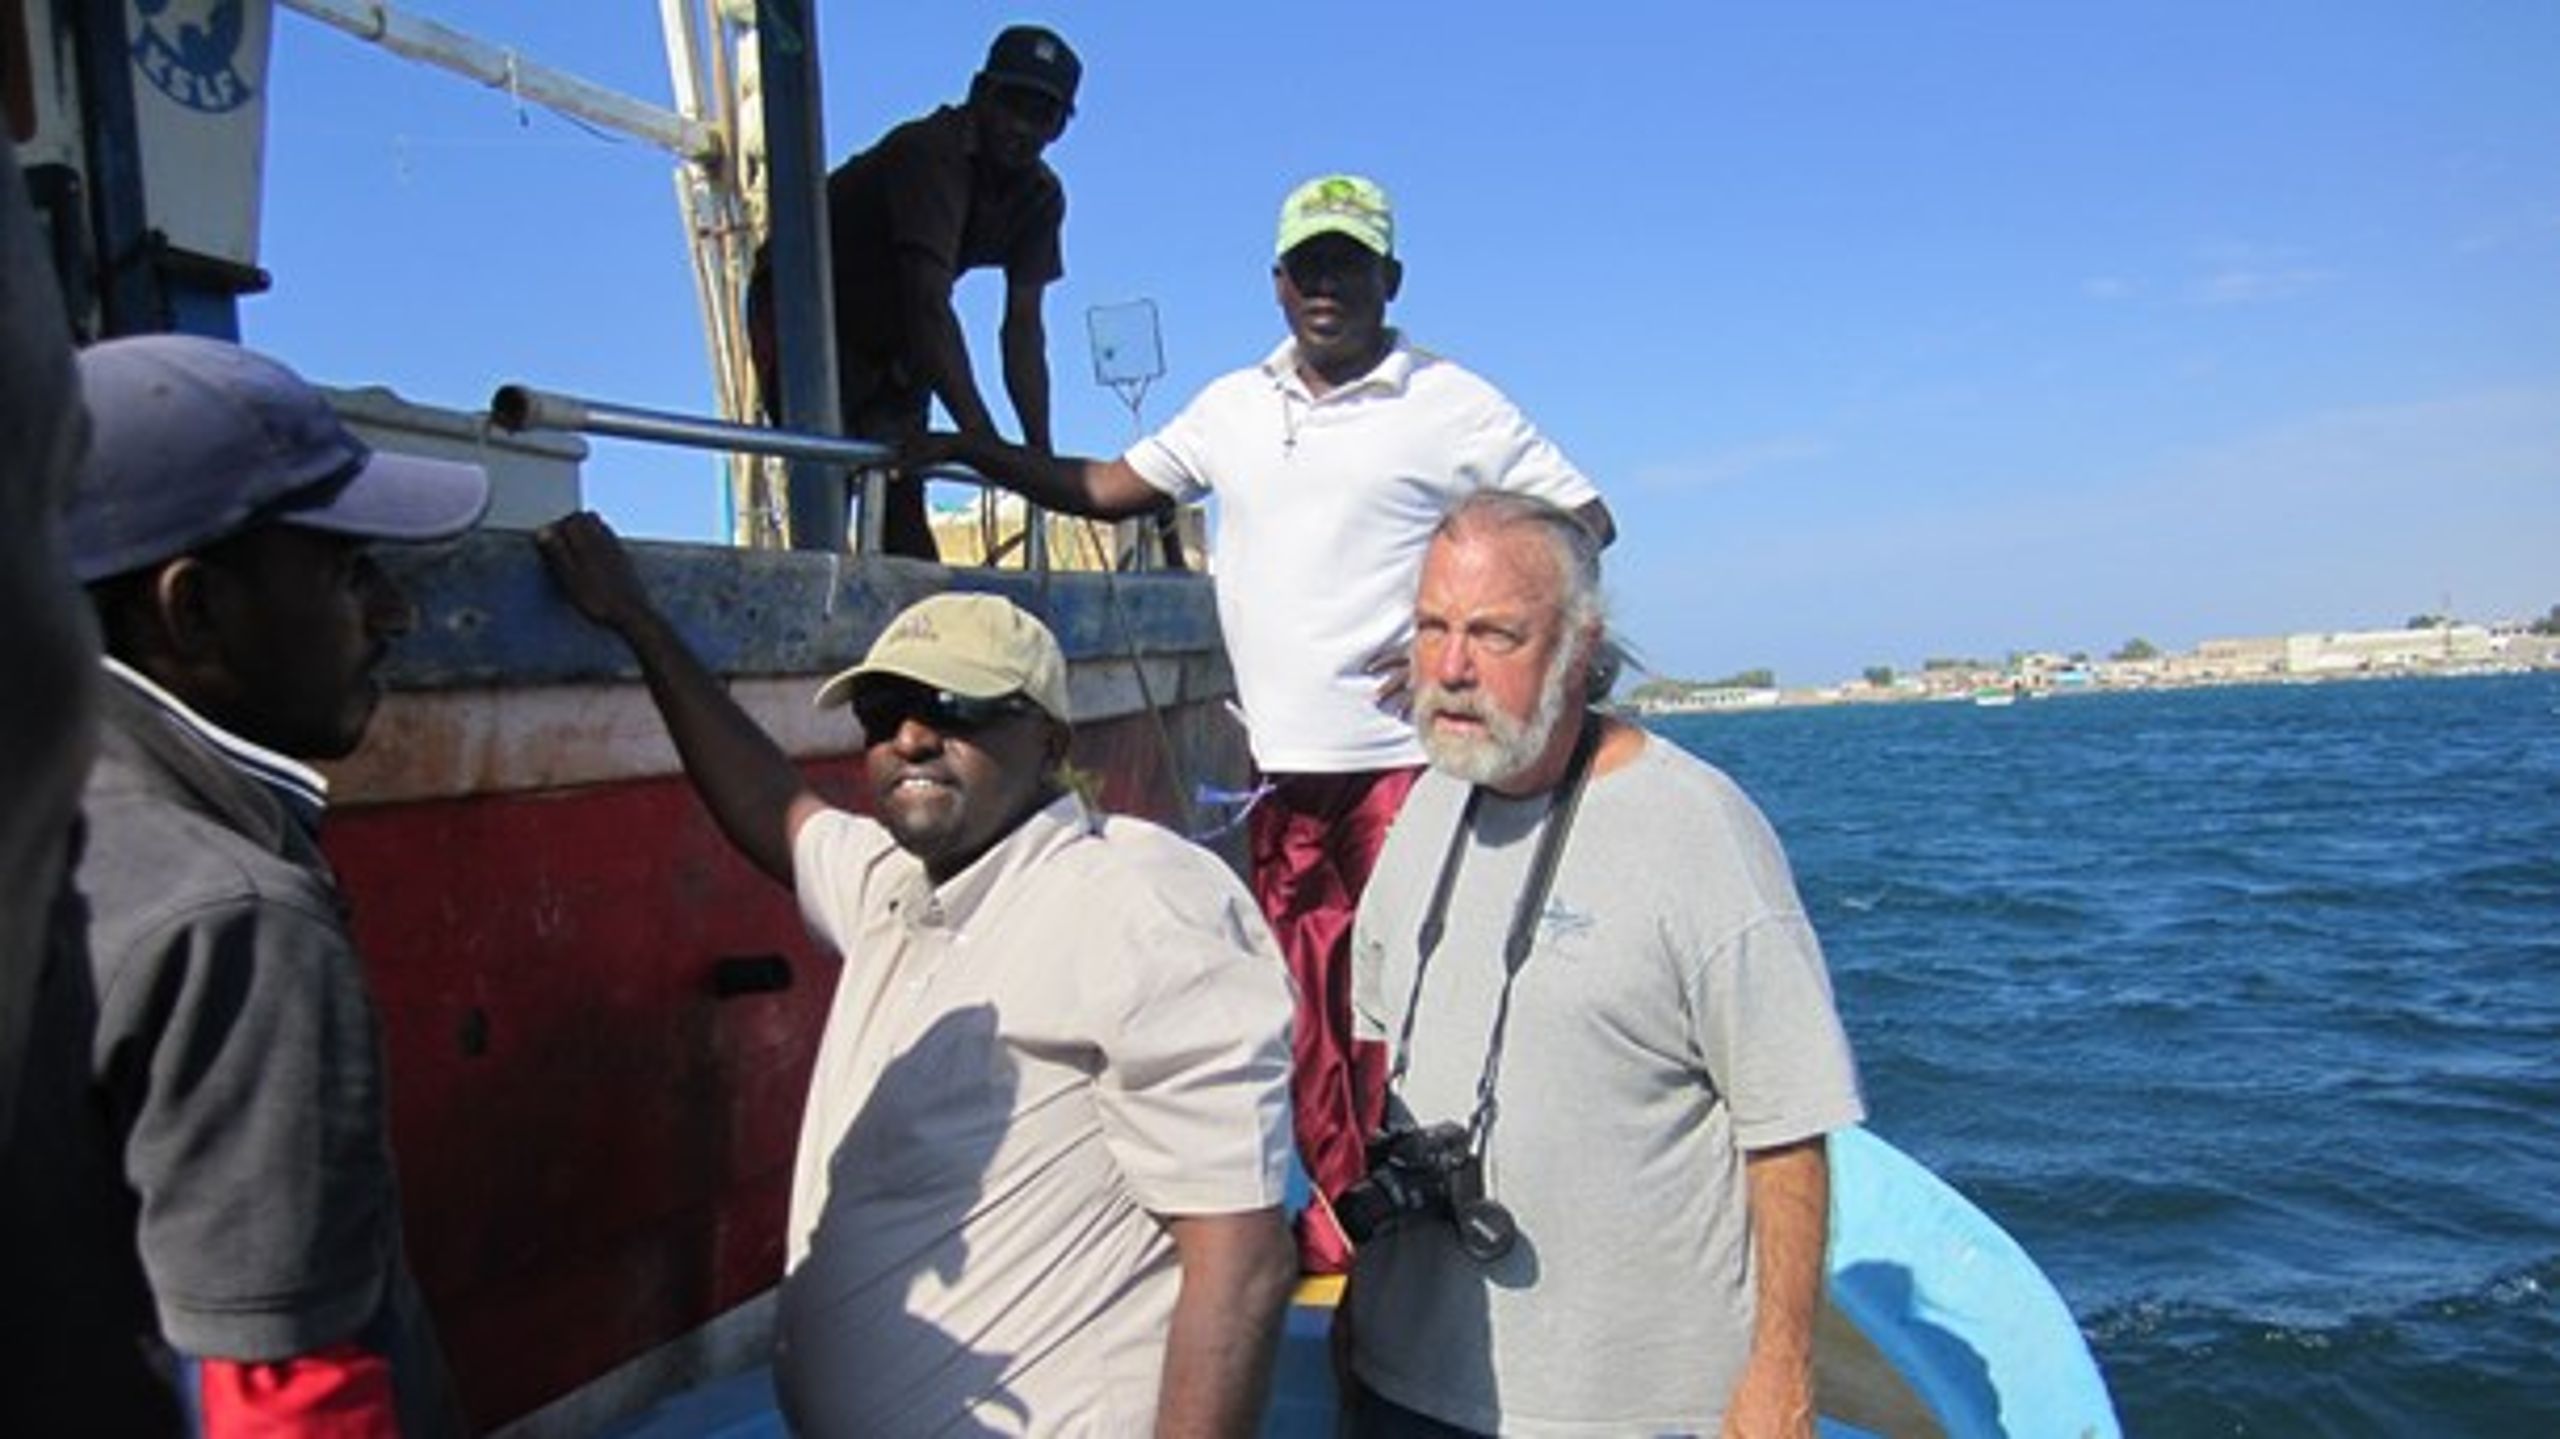 Marcel Arsenault støtter blandt andet fiskeri i Somalia. Det sker gennem lån i stedet for investeringer: "Hvad skal jeg med en andel af en båd? Jeg ved jo intet om at fiske," siger han.&nbsp;